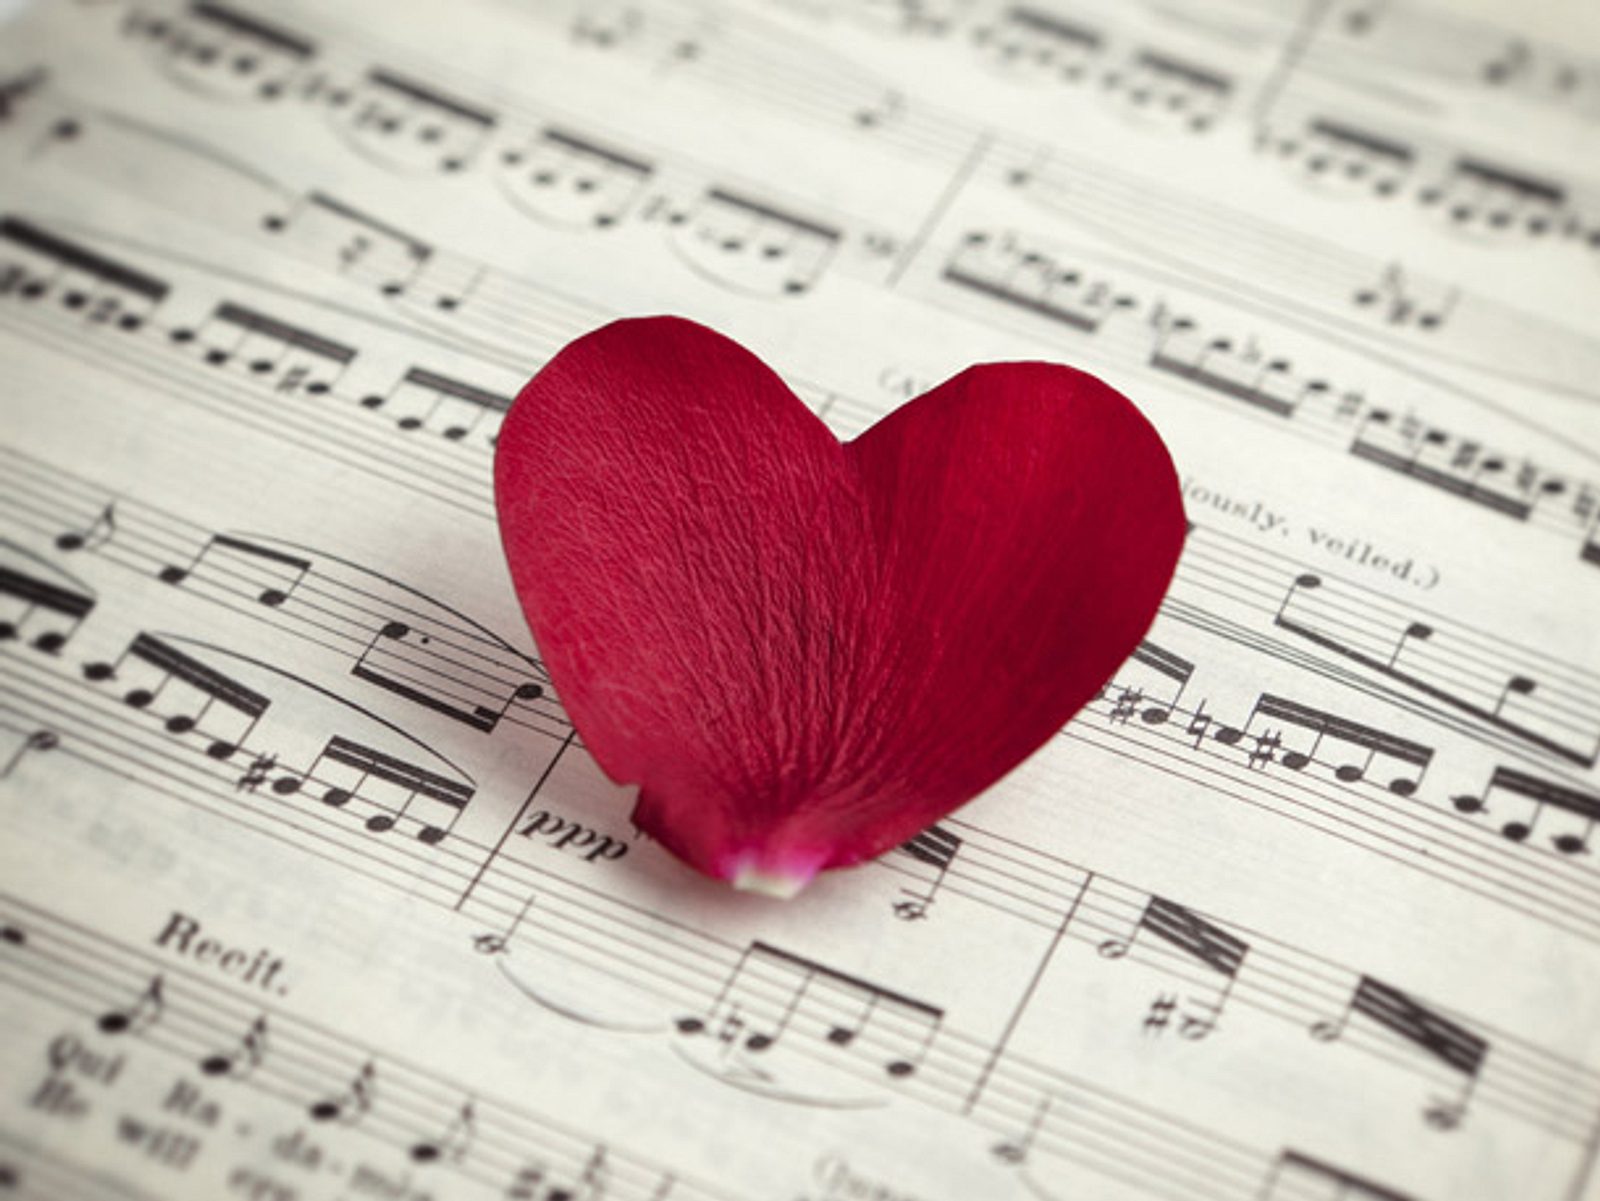 Очень красивая песня люблю. Музыка любви. Красивые картинки про любовь. Романтично и музыкально. Композиция "это любовь".